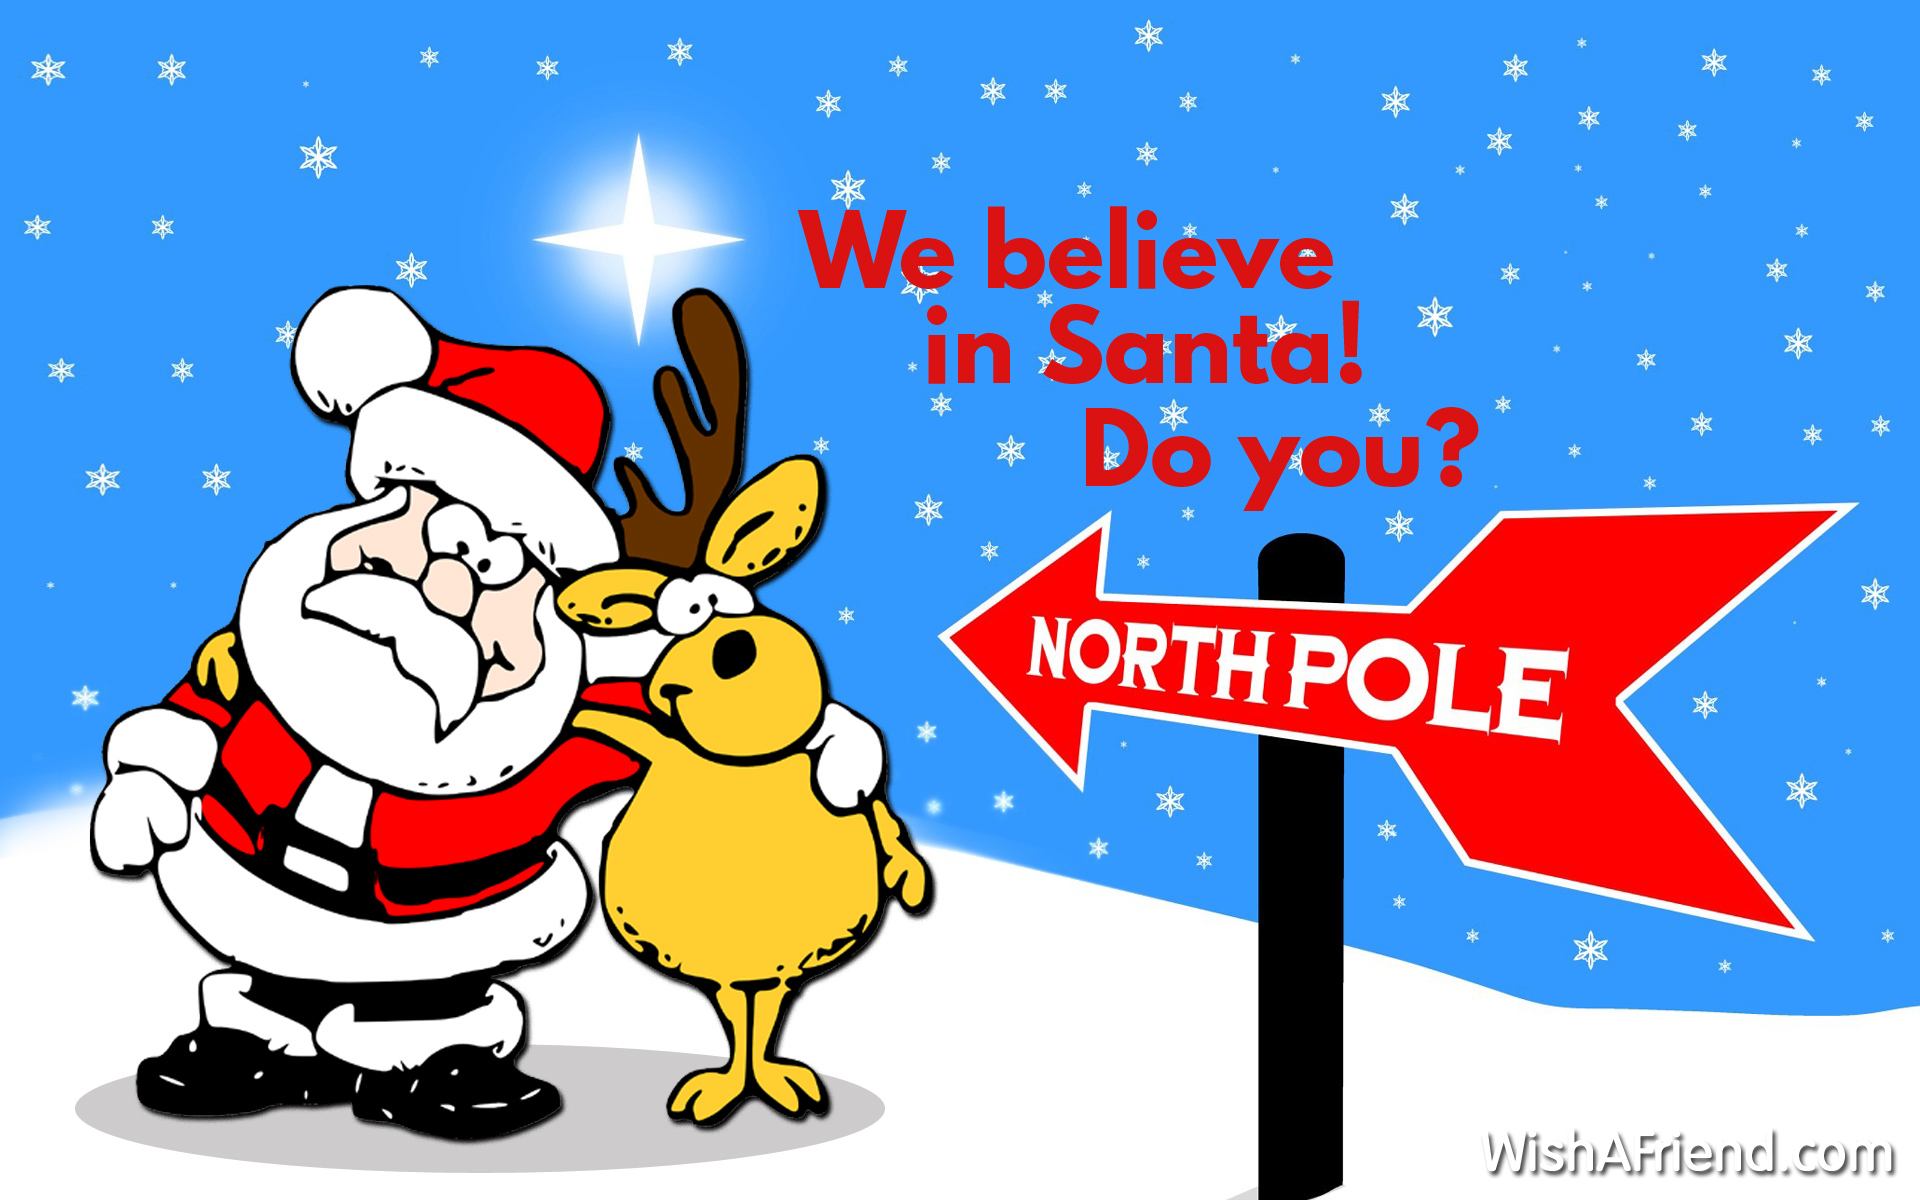 We believe in Santa! Do